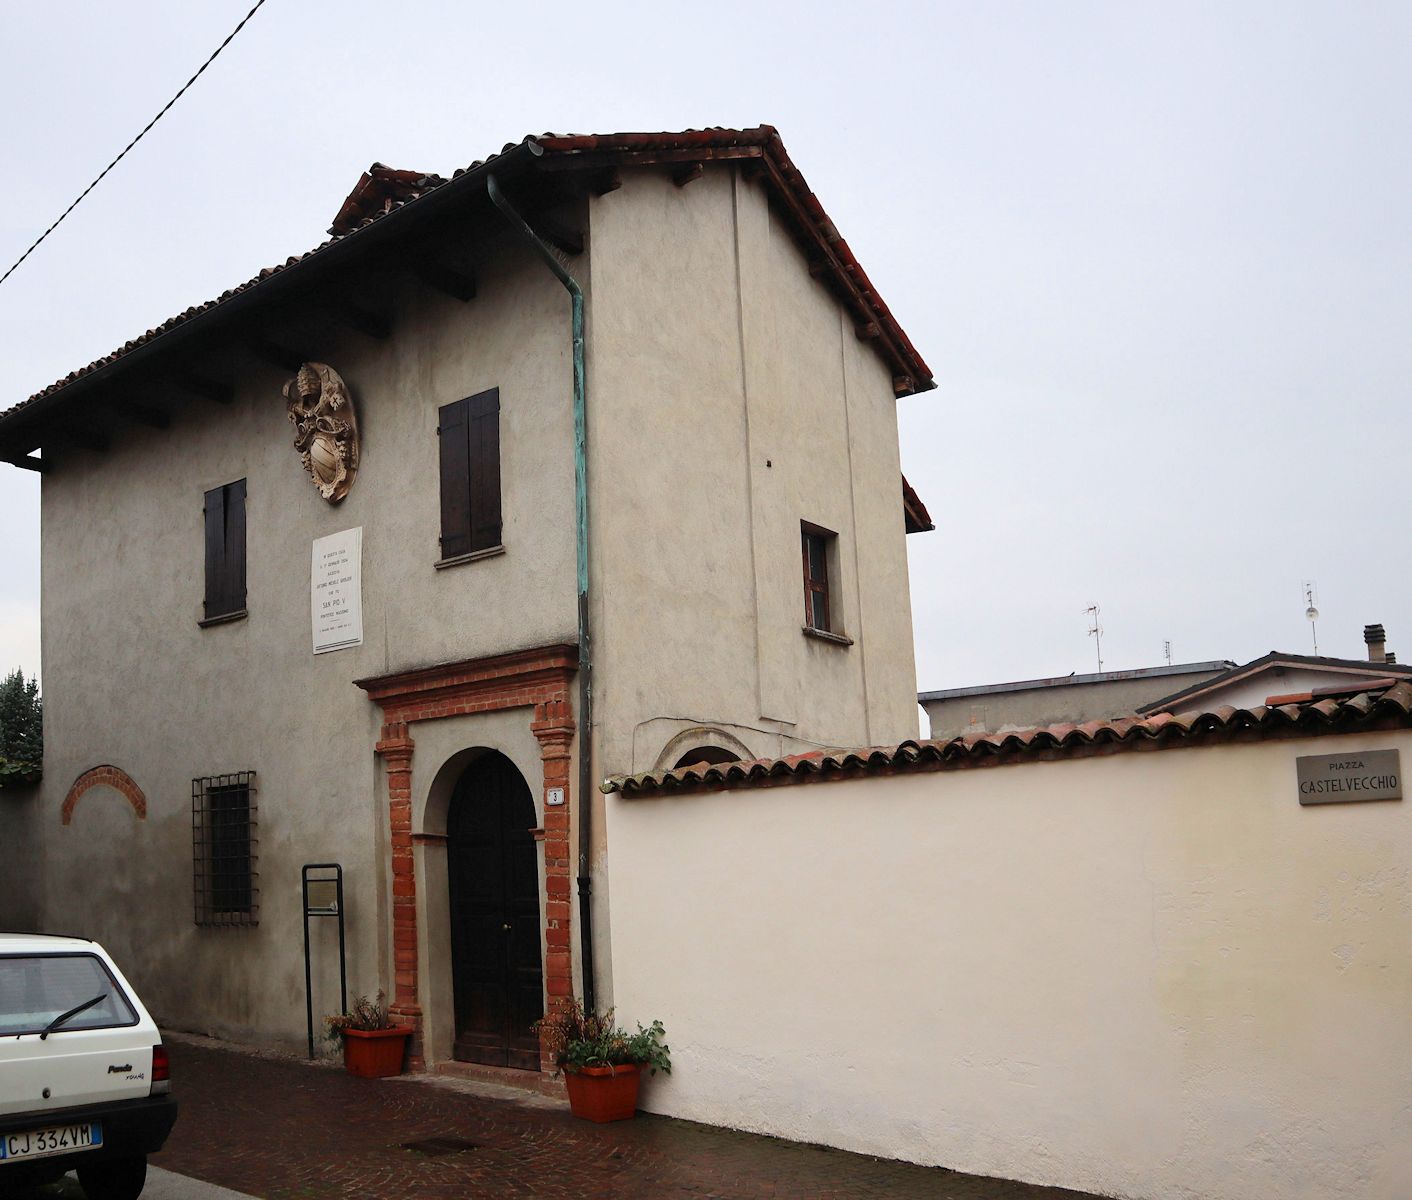 Pius' Geburtshaus in Bosco Marengo